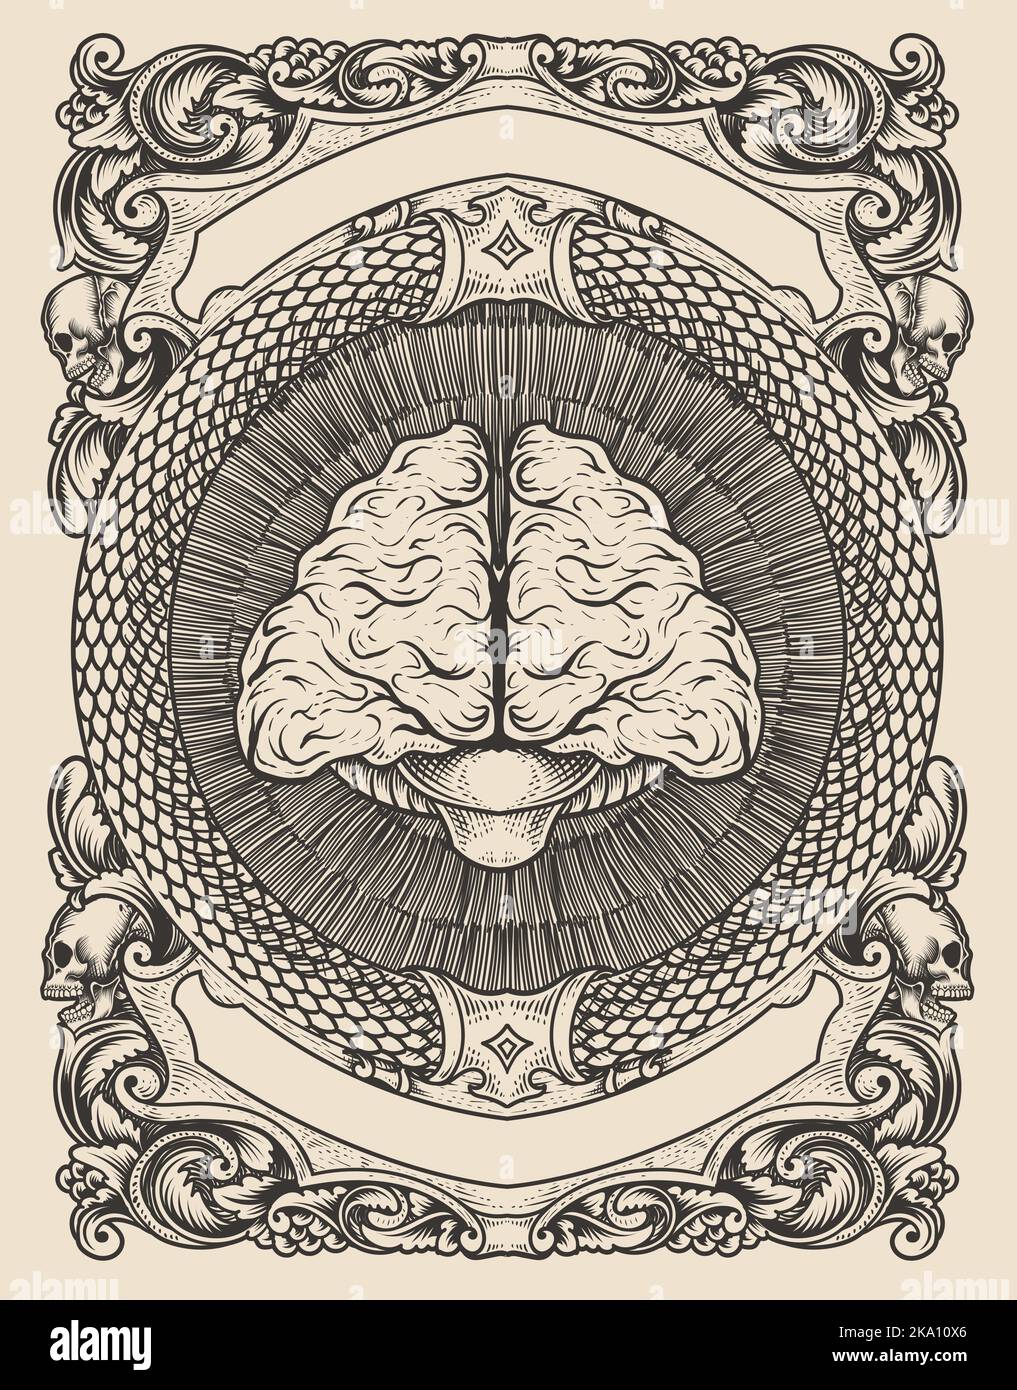 illustrazione cervello antico con stile di incisione Illustrazione Vettoriale